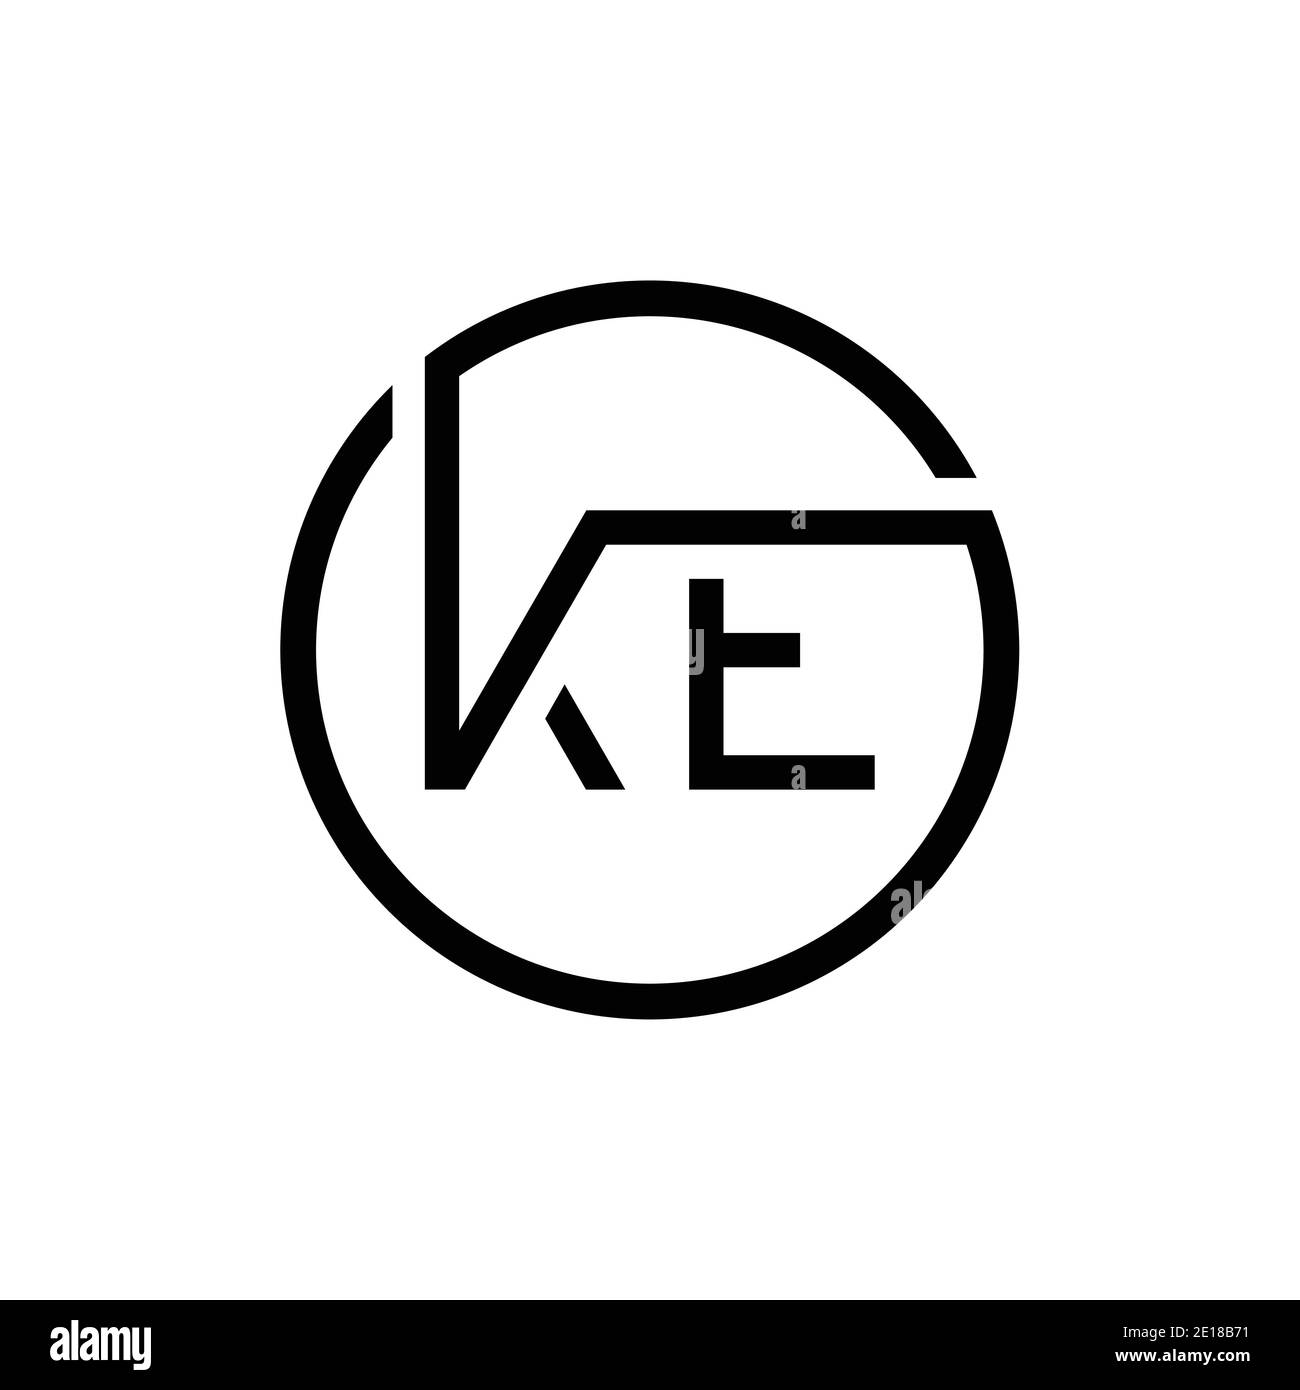 Initial EK Letter Linked Logo Business Vector Template. Creative Letter EK  Logo Design Stock Vector Image & Art - Alamy